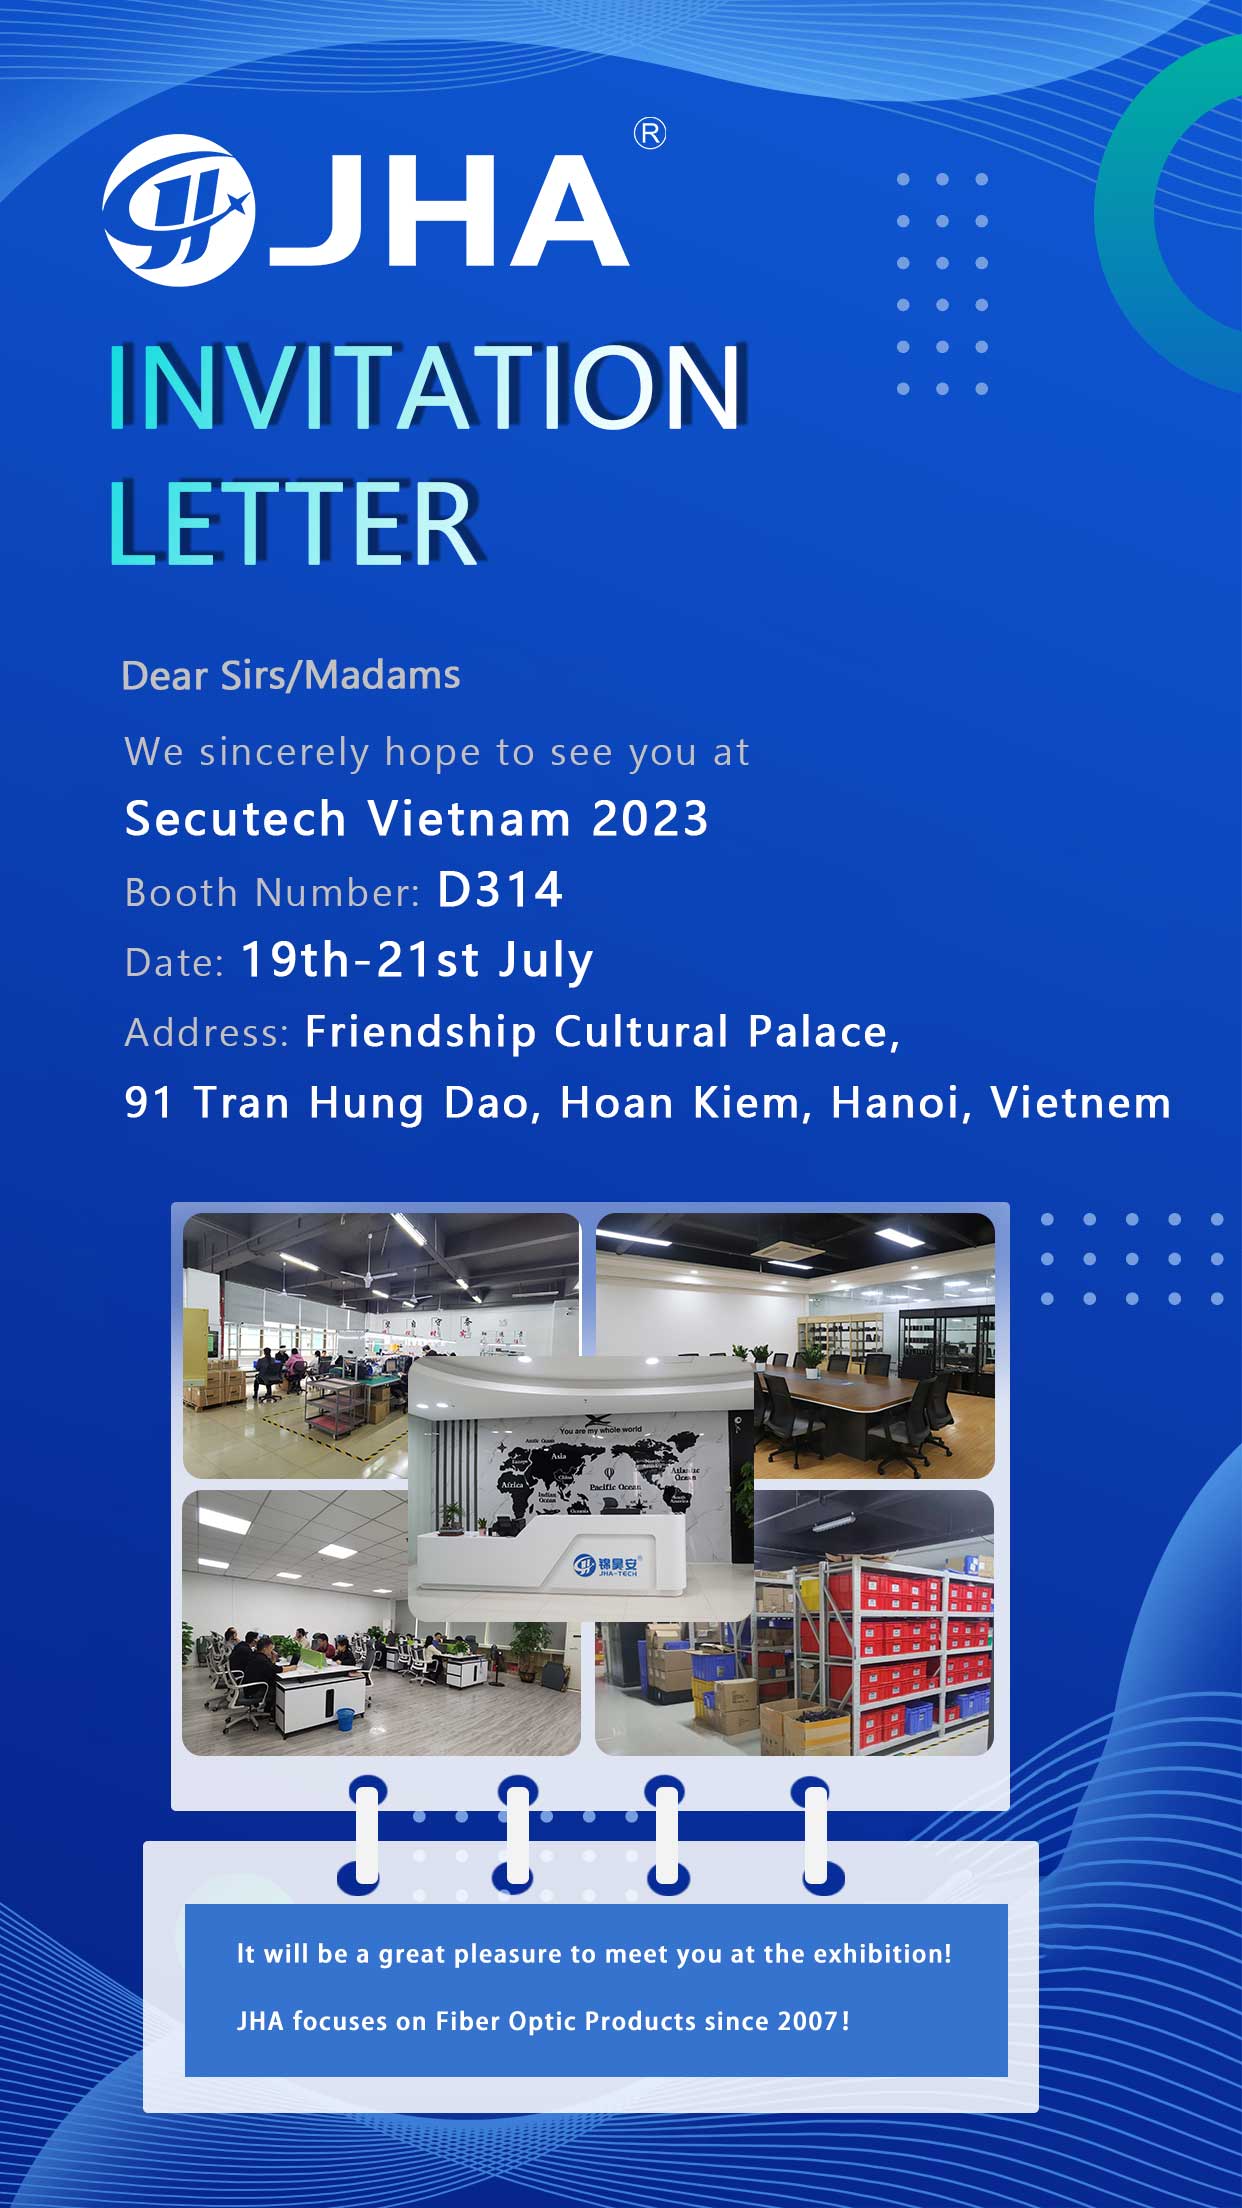 Tham gia cùng chúng tôi tại Secutech Vietnam 2023 – Số gian hàng D314